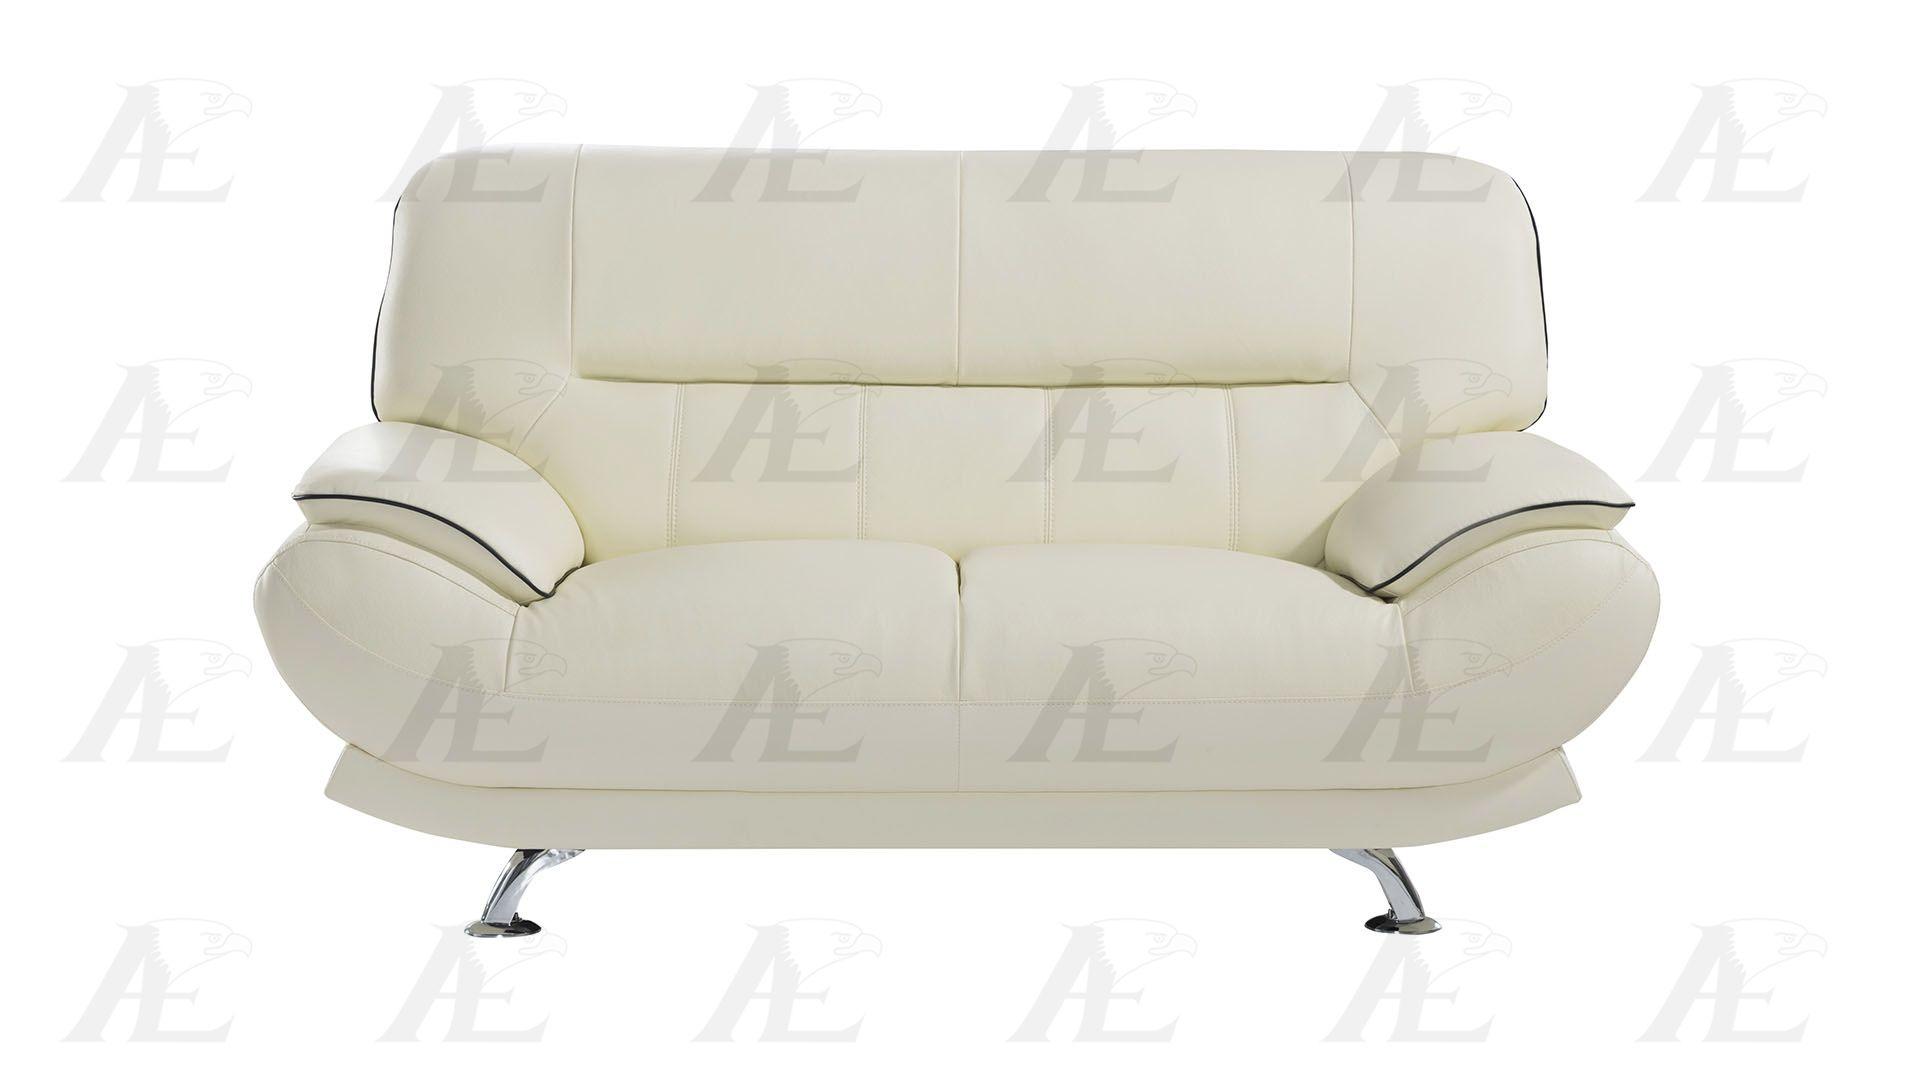 

                    
American Eagle Furniture EK-B118-IV Sofa Set Ivory Genuine Leather Purchase 
